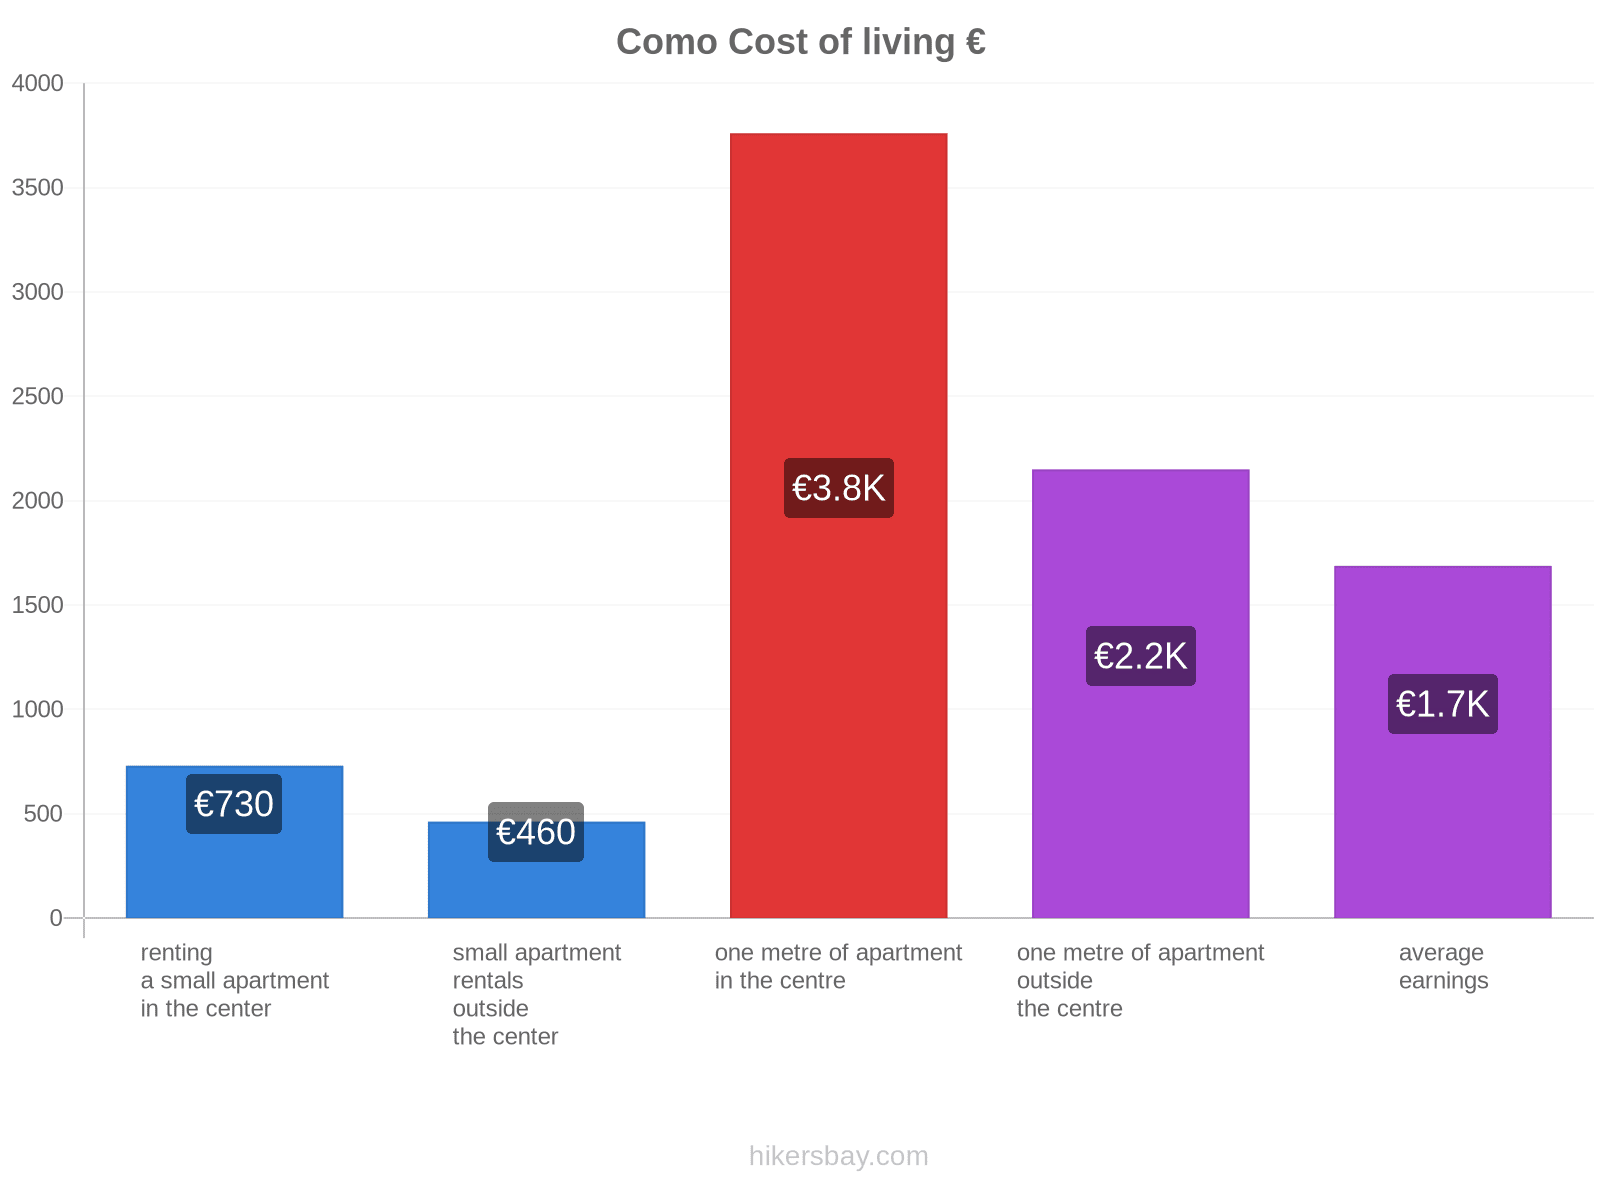 Como cost of living hikersbay.com